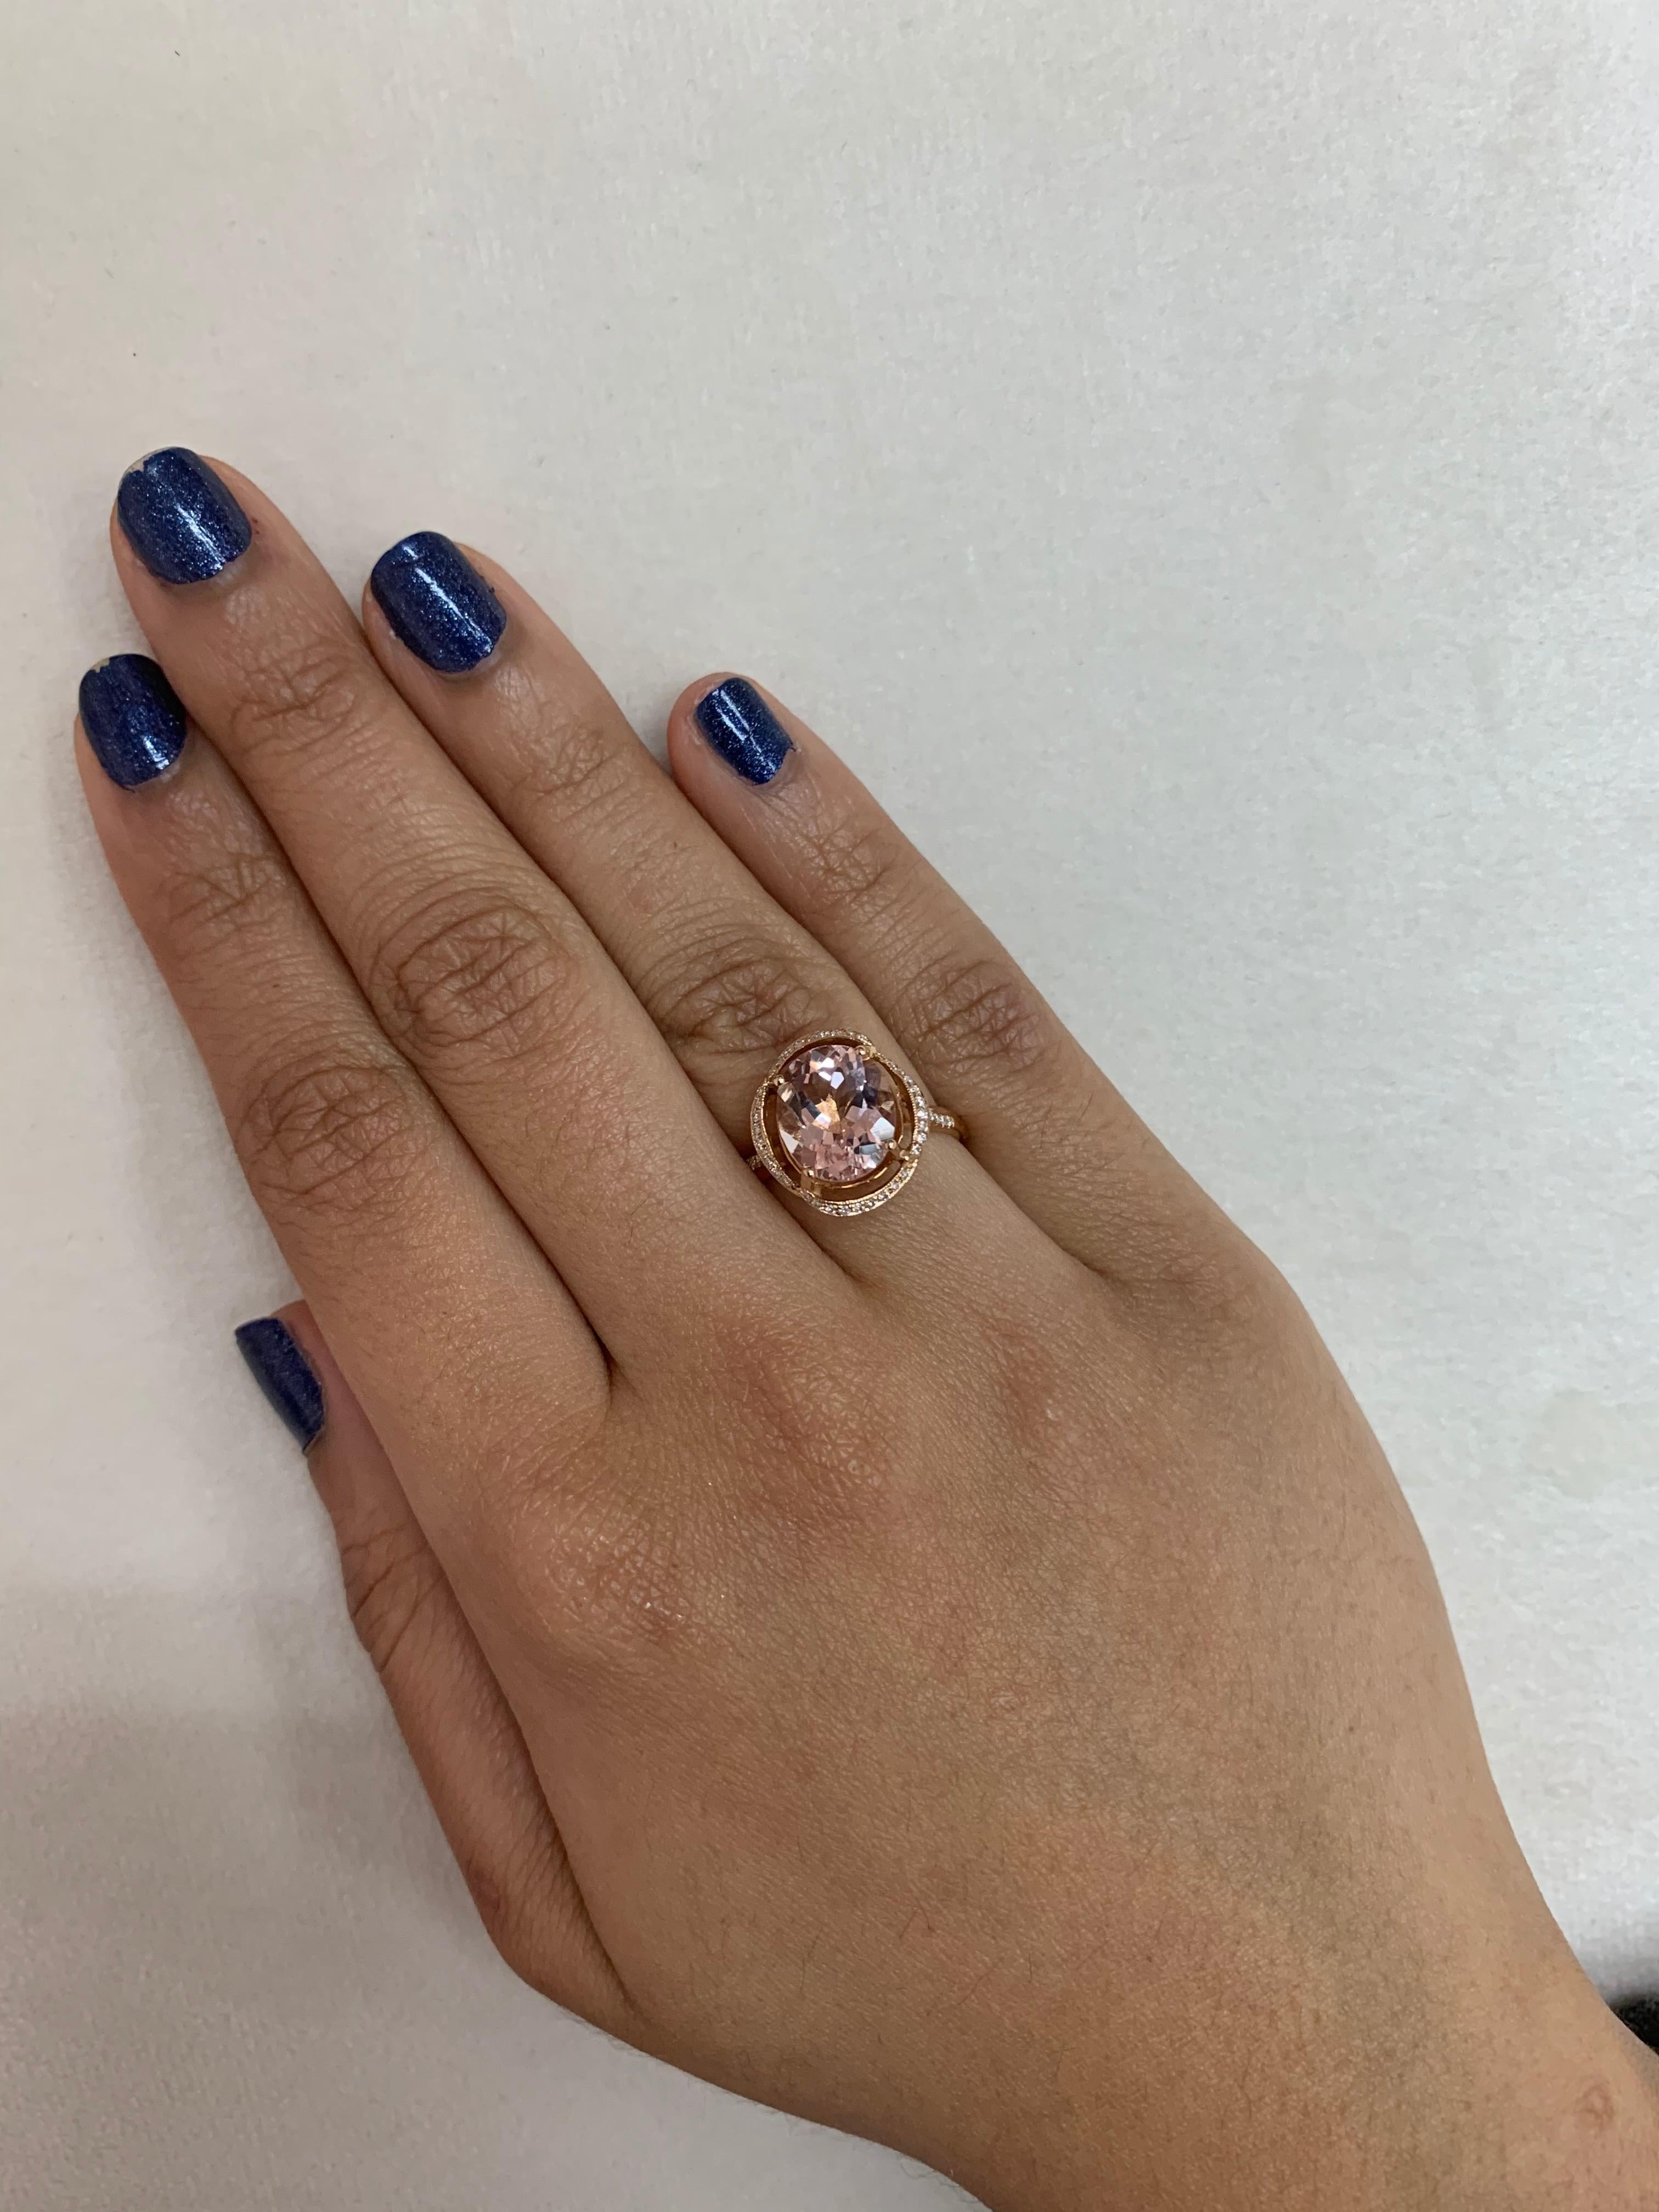 Diese Kollektion bietet eine Reihe von prächtigen Morganiten! Diese mit Diamanten besetzten Ringe sind aus Roségold gefertigt und wirken klassisch und elegant. 

Klassischer Morganit-Ring aus 18 Karat Roségold mit Diamanten. 

Morganit: 2,94 Karat